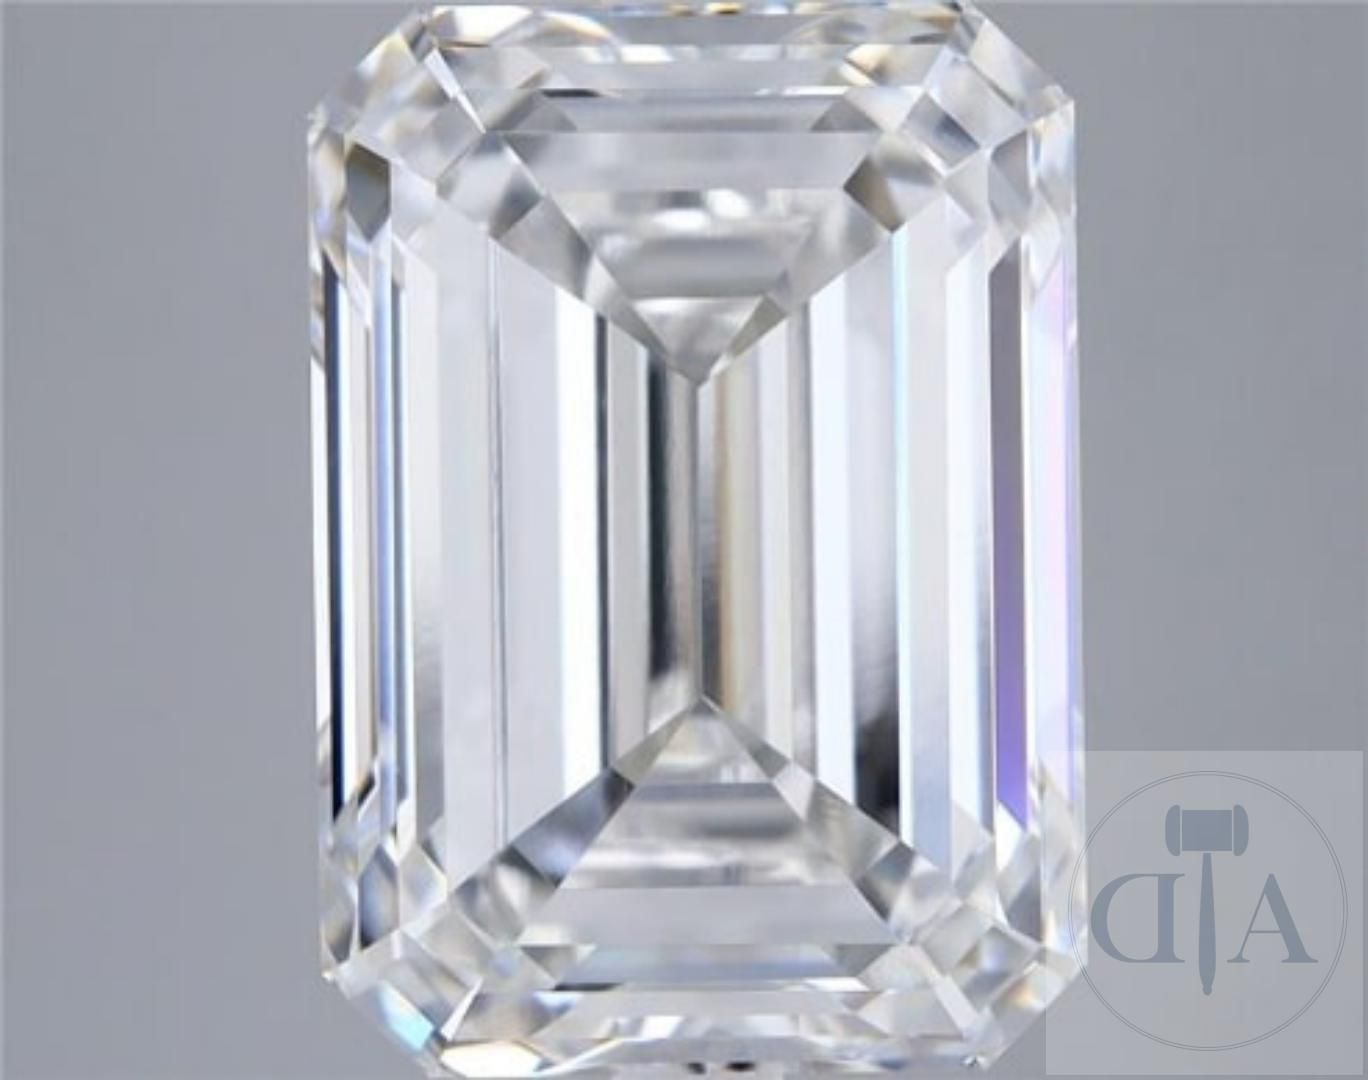 Null Impressive high quality diamond 5.01ct E VS1 with IGI Certificate

Laborato&hellip;